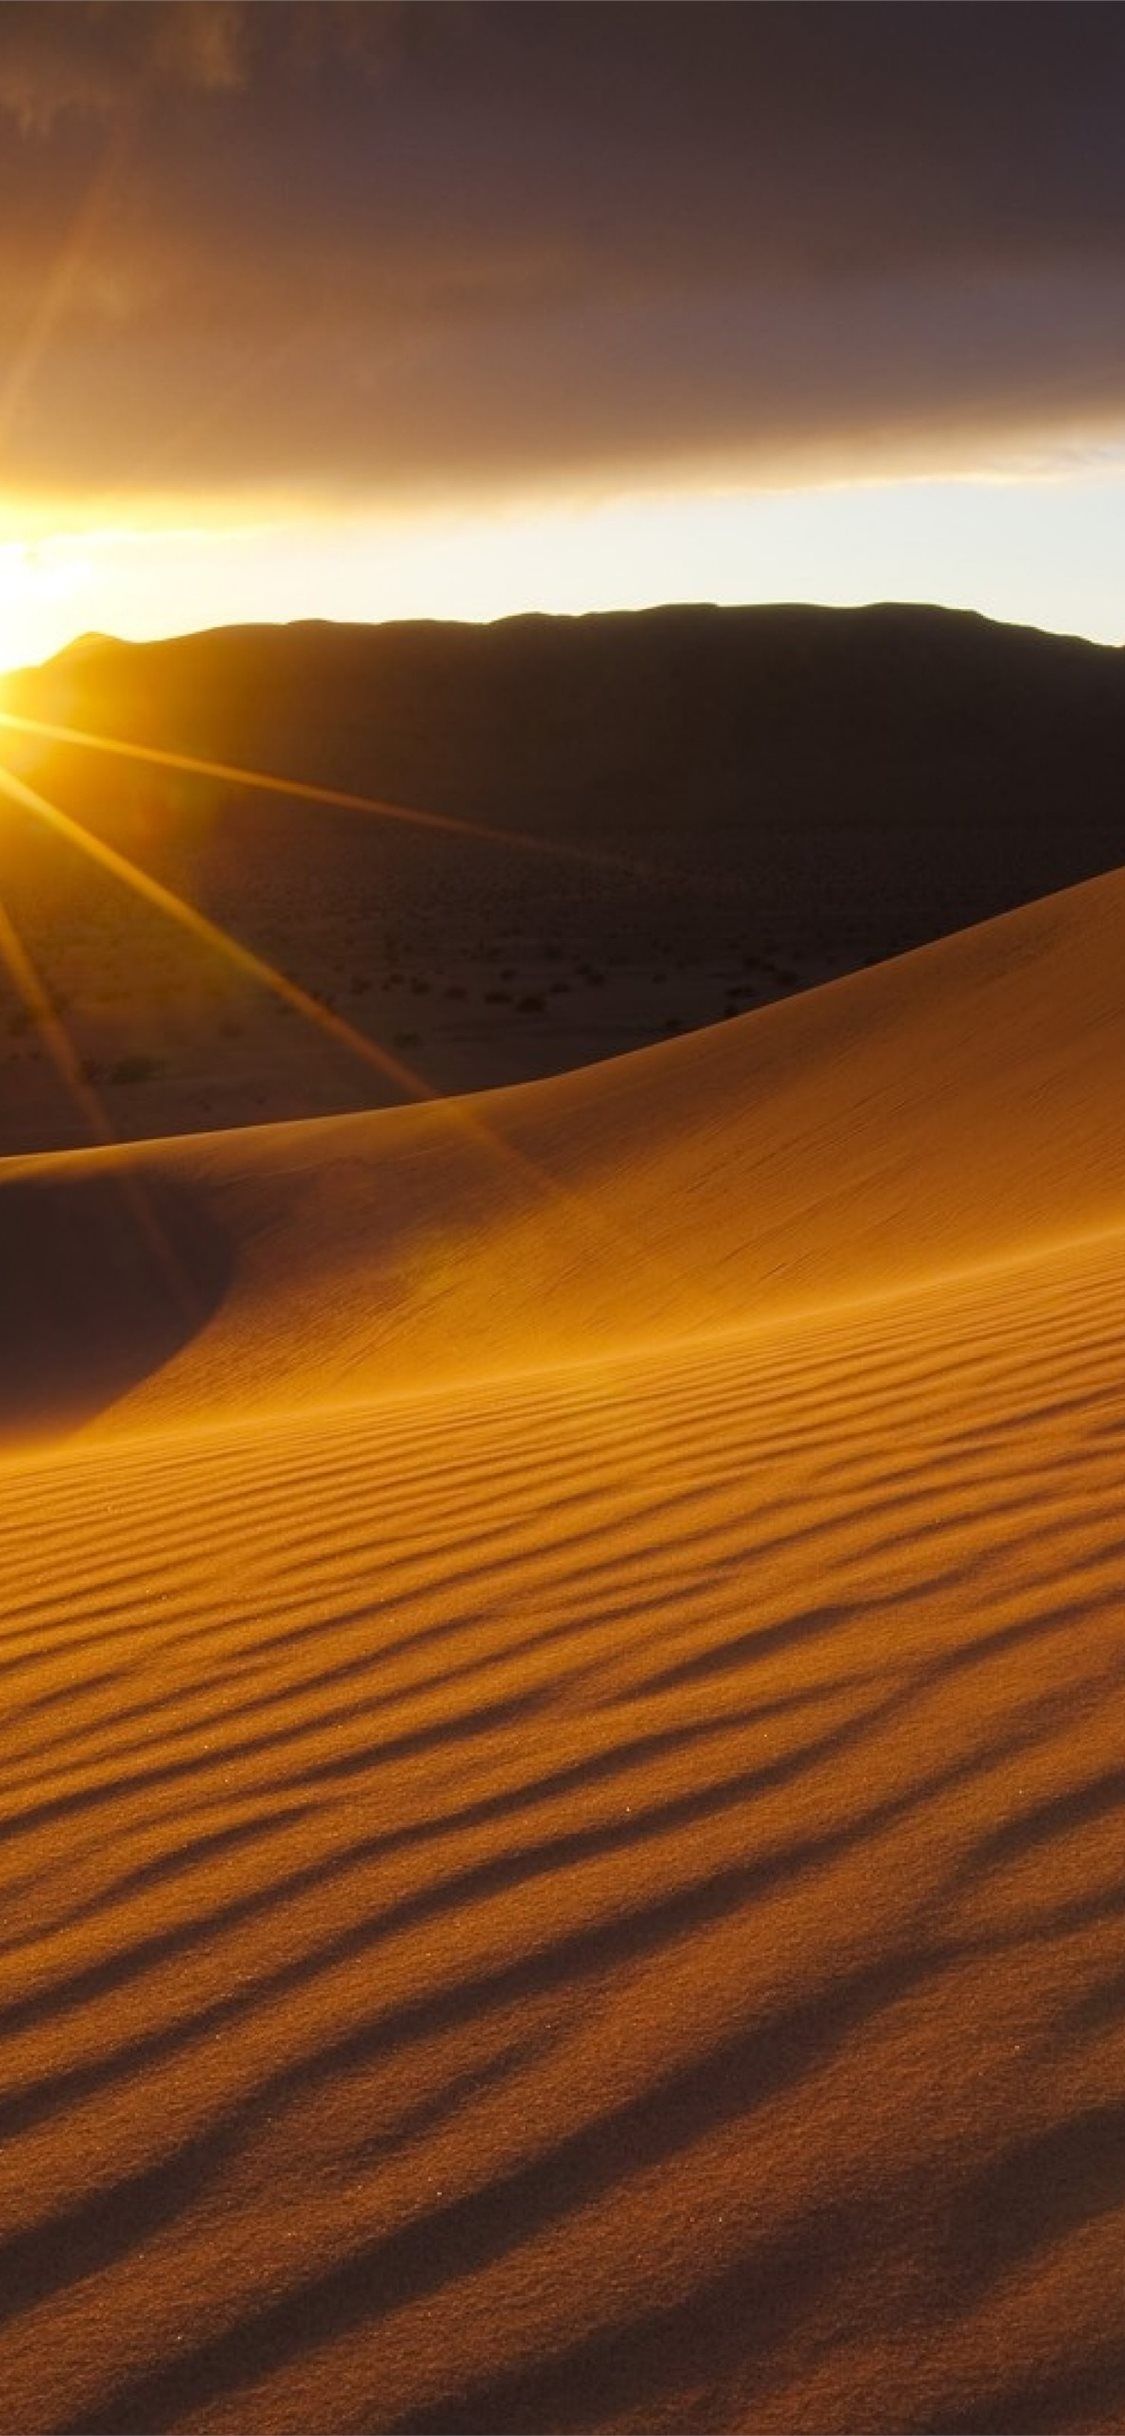 A sunset in the desert with sand dunes - Desert